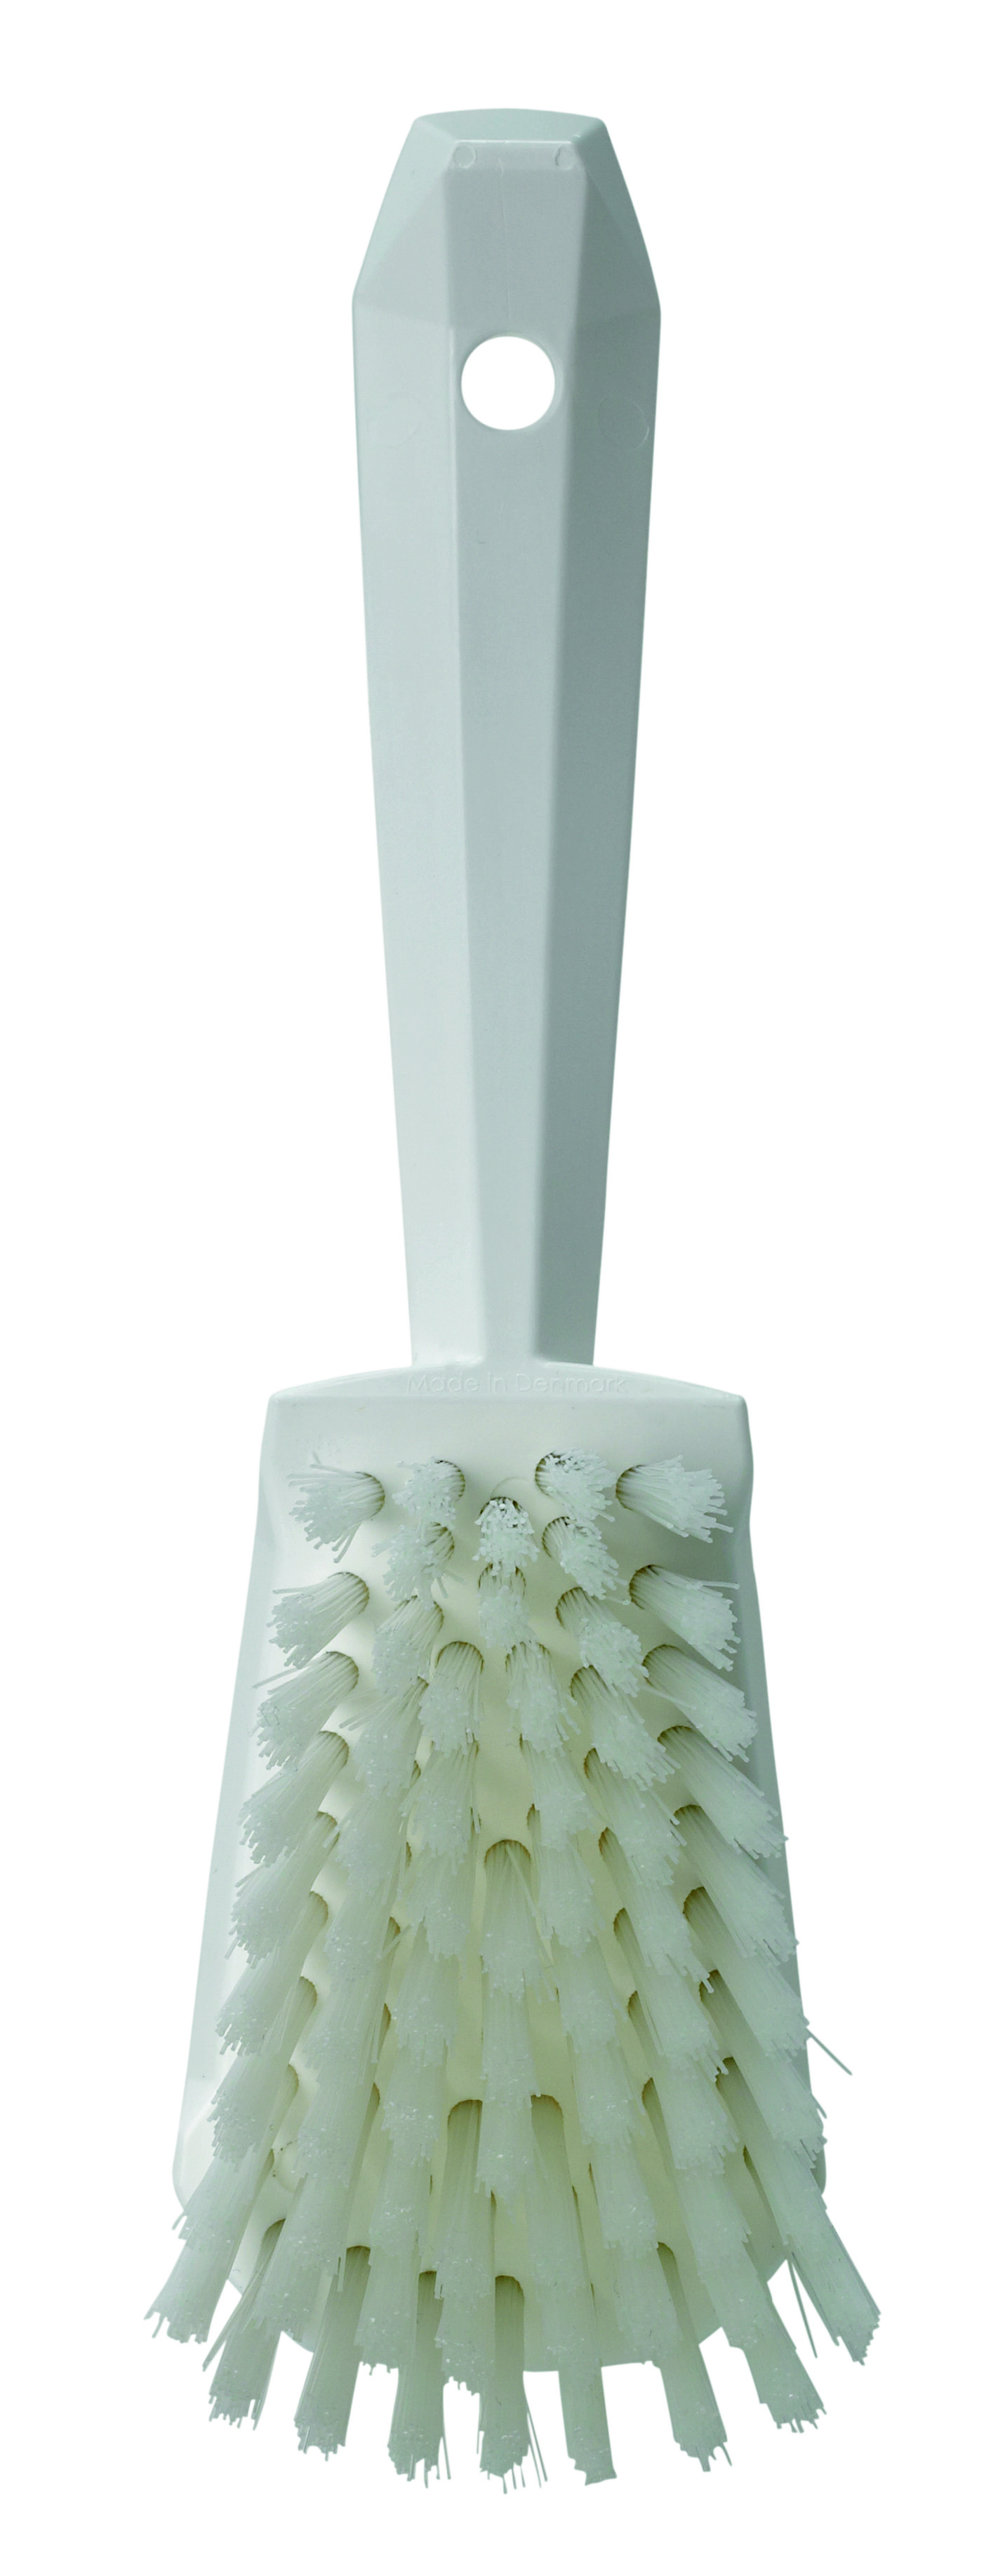 Щетка Vikan ручная для мытья с короткой ручкой жесткая, 270 мм, белая